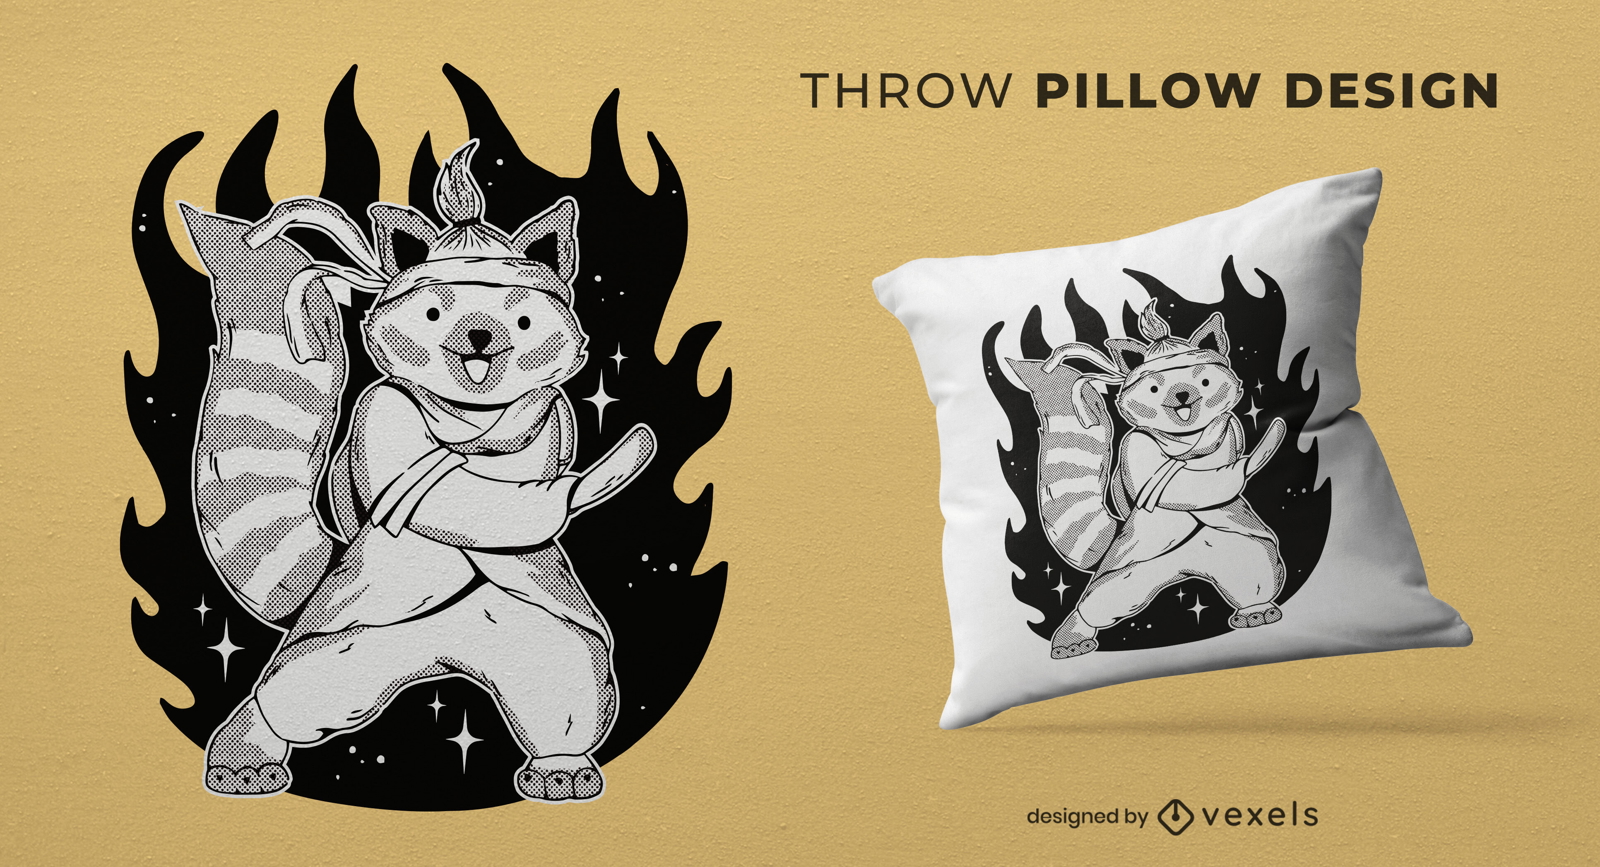 Red panda doing martial arts throw pillow design